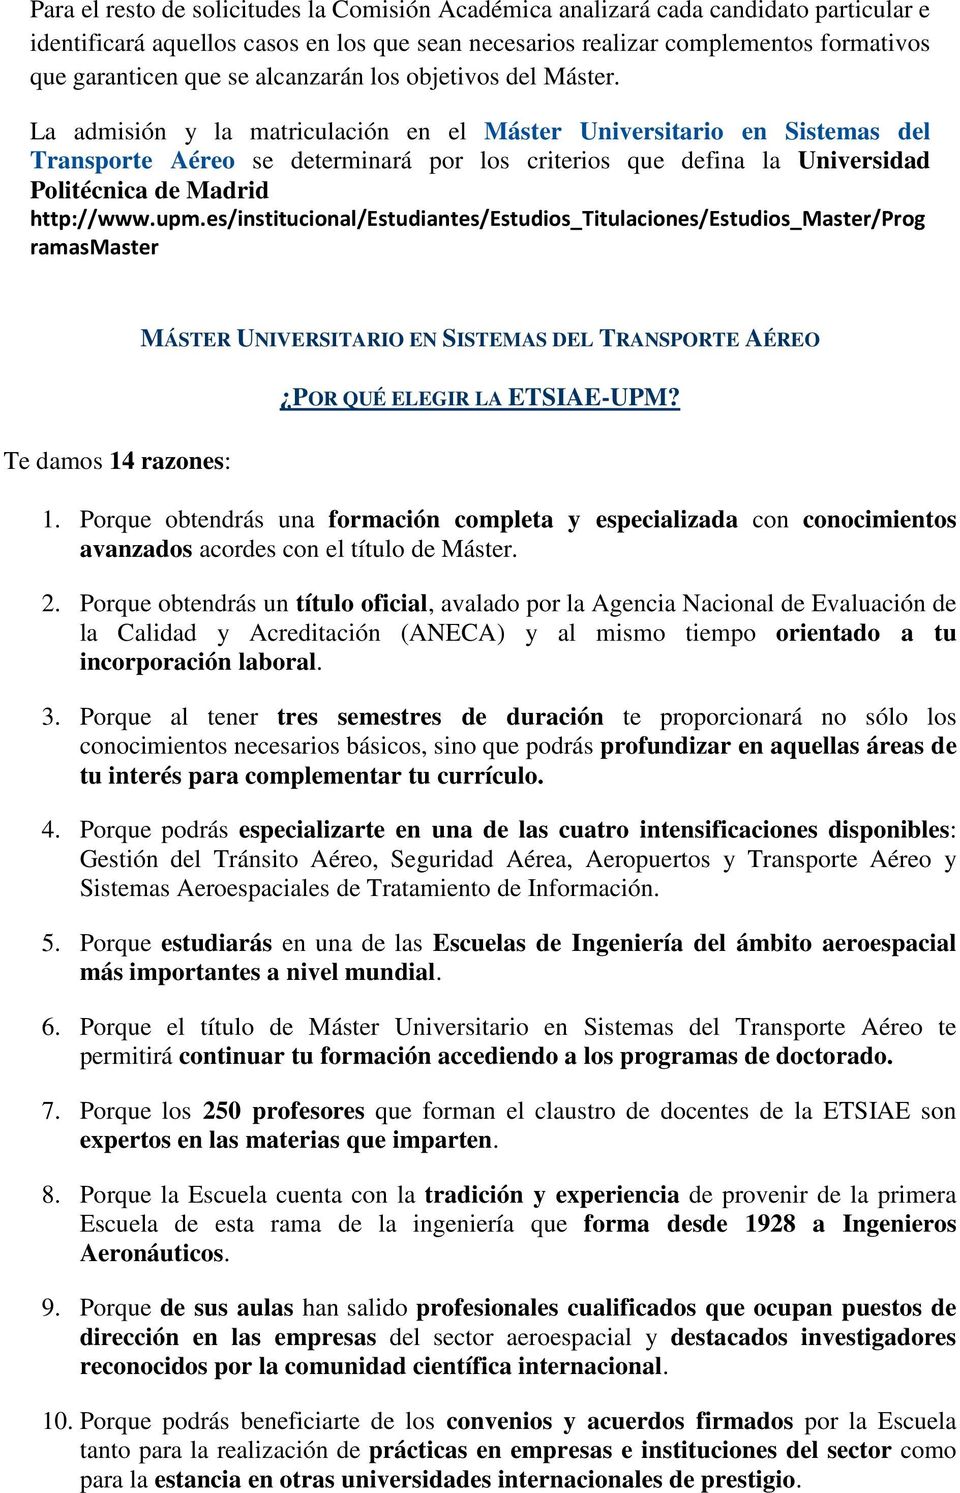 La admisión y la matriculación en el Máster Universitario en Sistemas del Transporte Aéreo se determinará por los criterios que defina la Universidad Politécnica de Madrid http://www.upm.